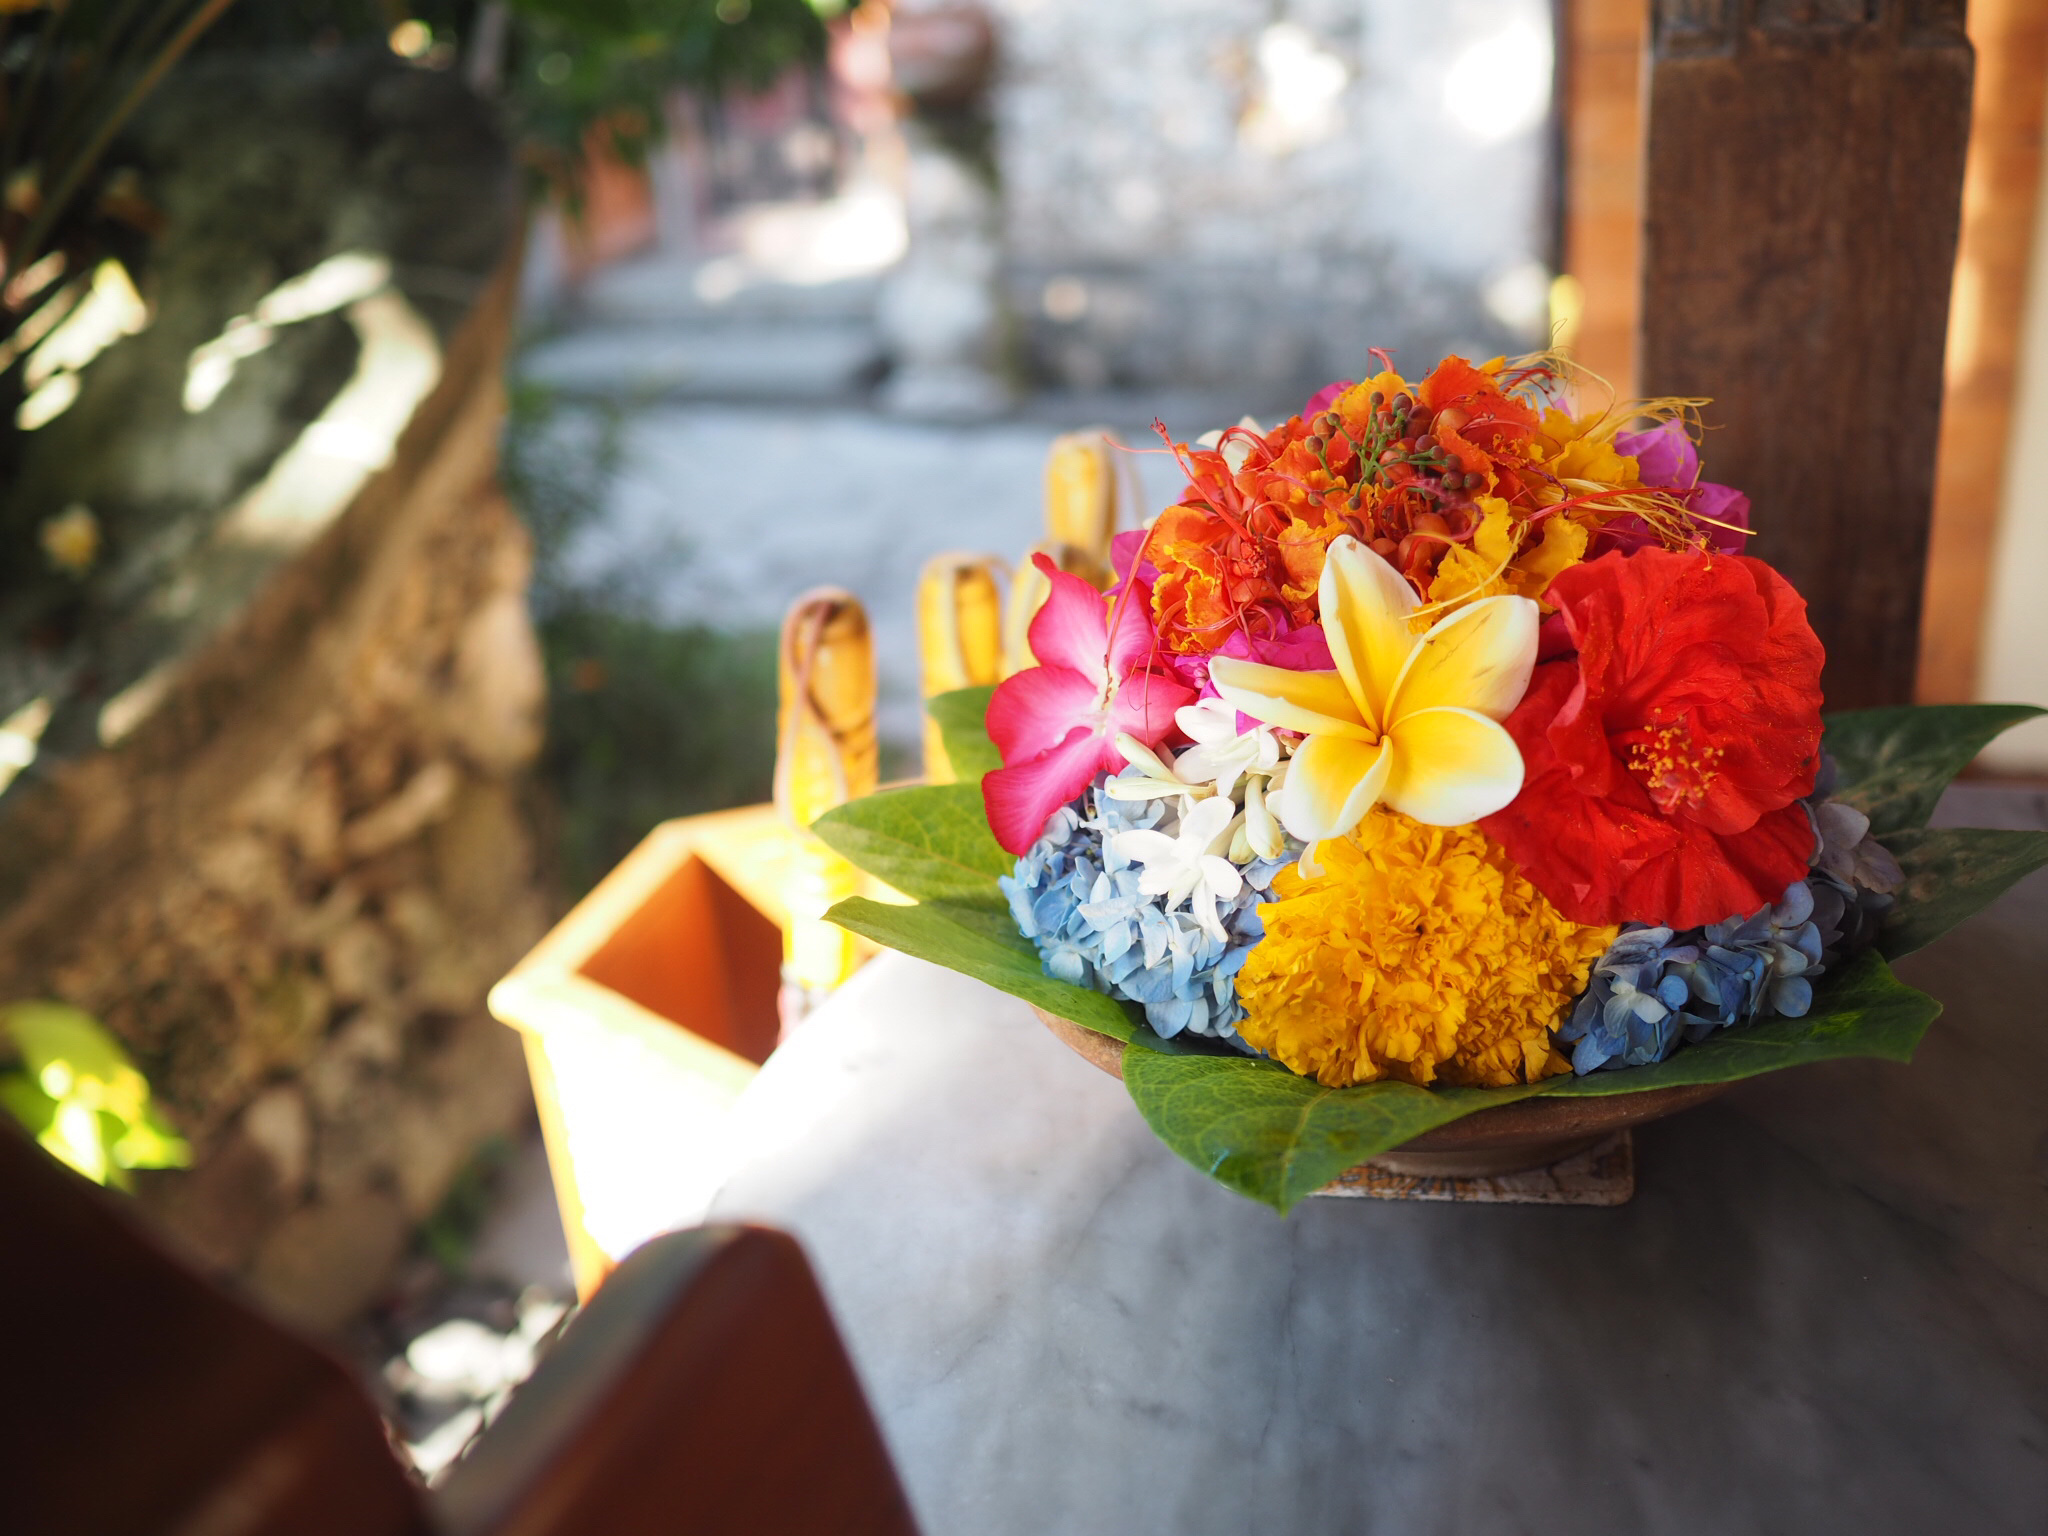 バリ島の男性が頭に花を飾る理由とは おじさんが頭に可愛い花を飾っていたらおかしいというのは本当か みずいろてすと